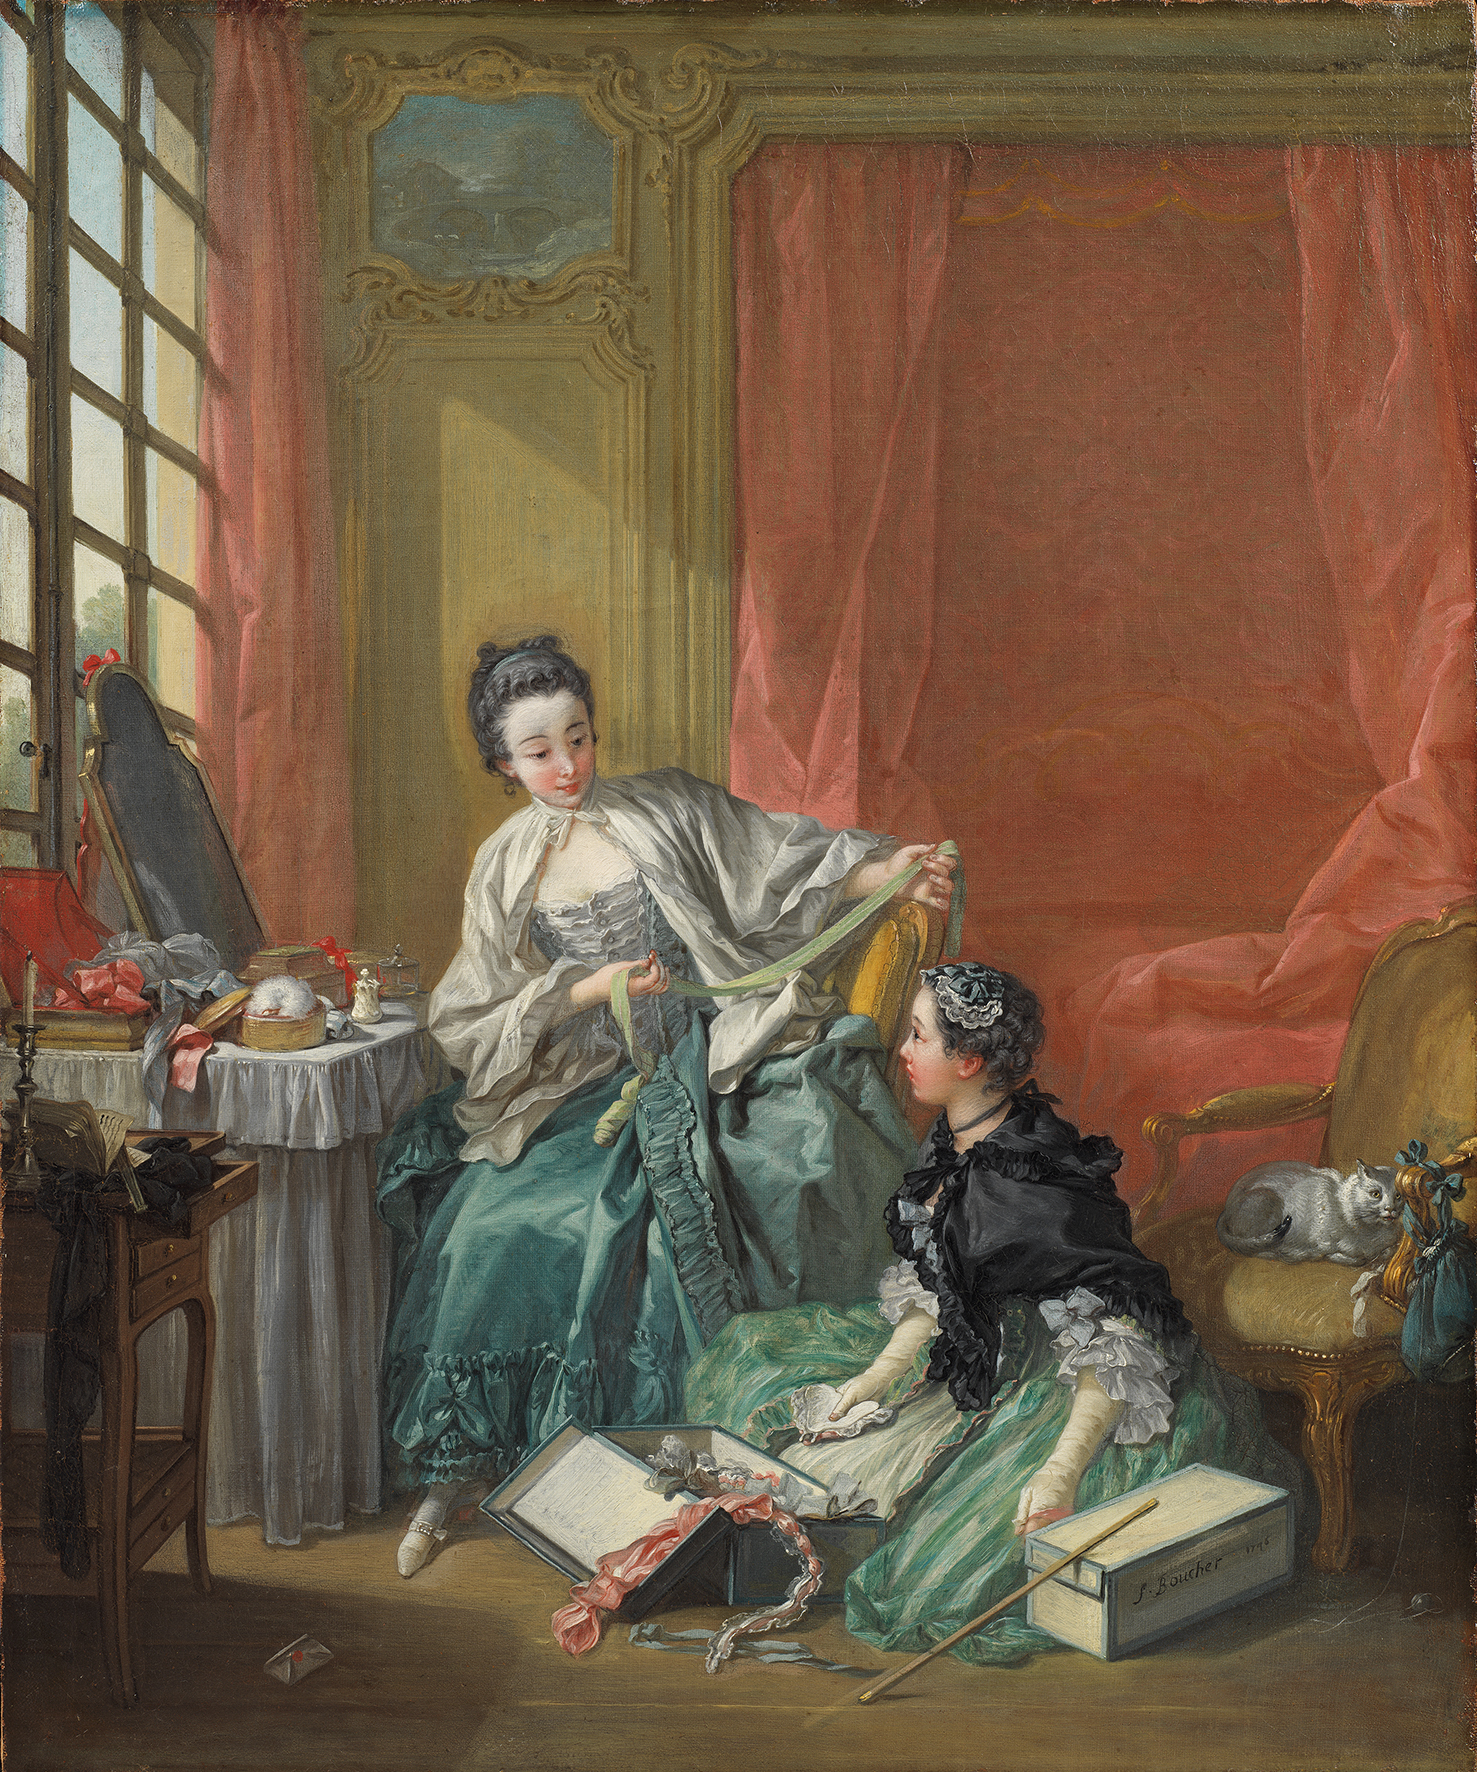 Abbildung von François Bouchers Werk Der Morgen. Es zeigt eine sitzende Frau in barocker Kleidung. Vor ihr kniet eine weitere Frau vor eine Kisten mit Gegenständen.